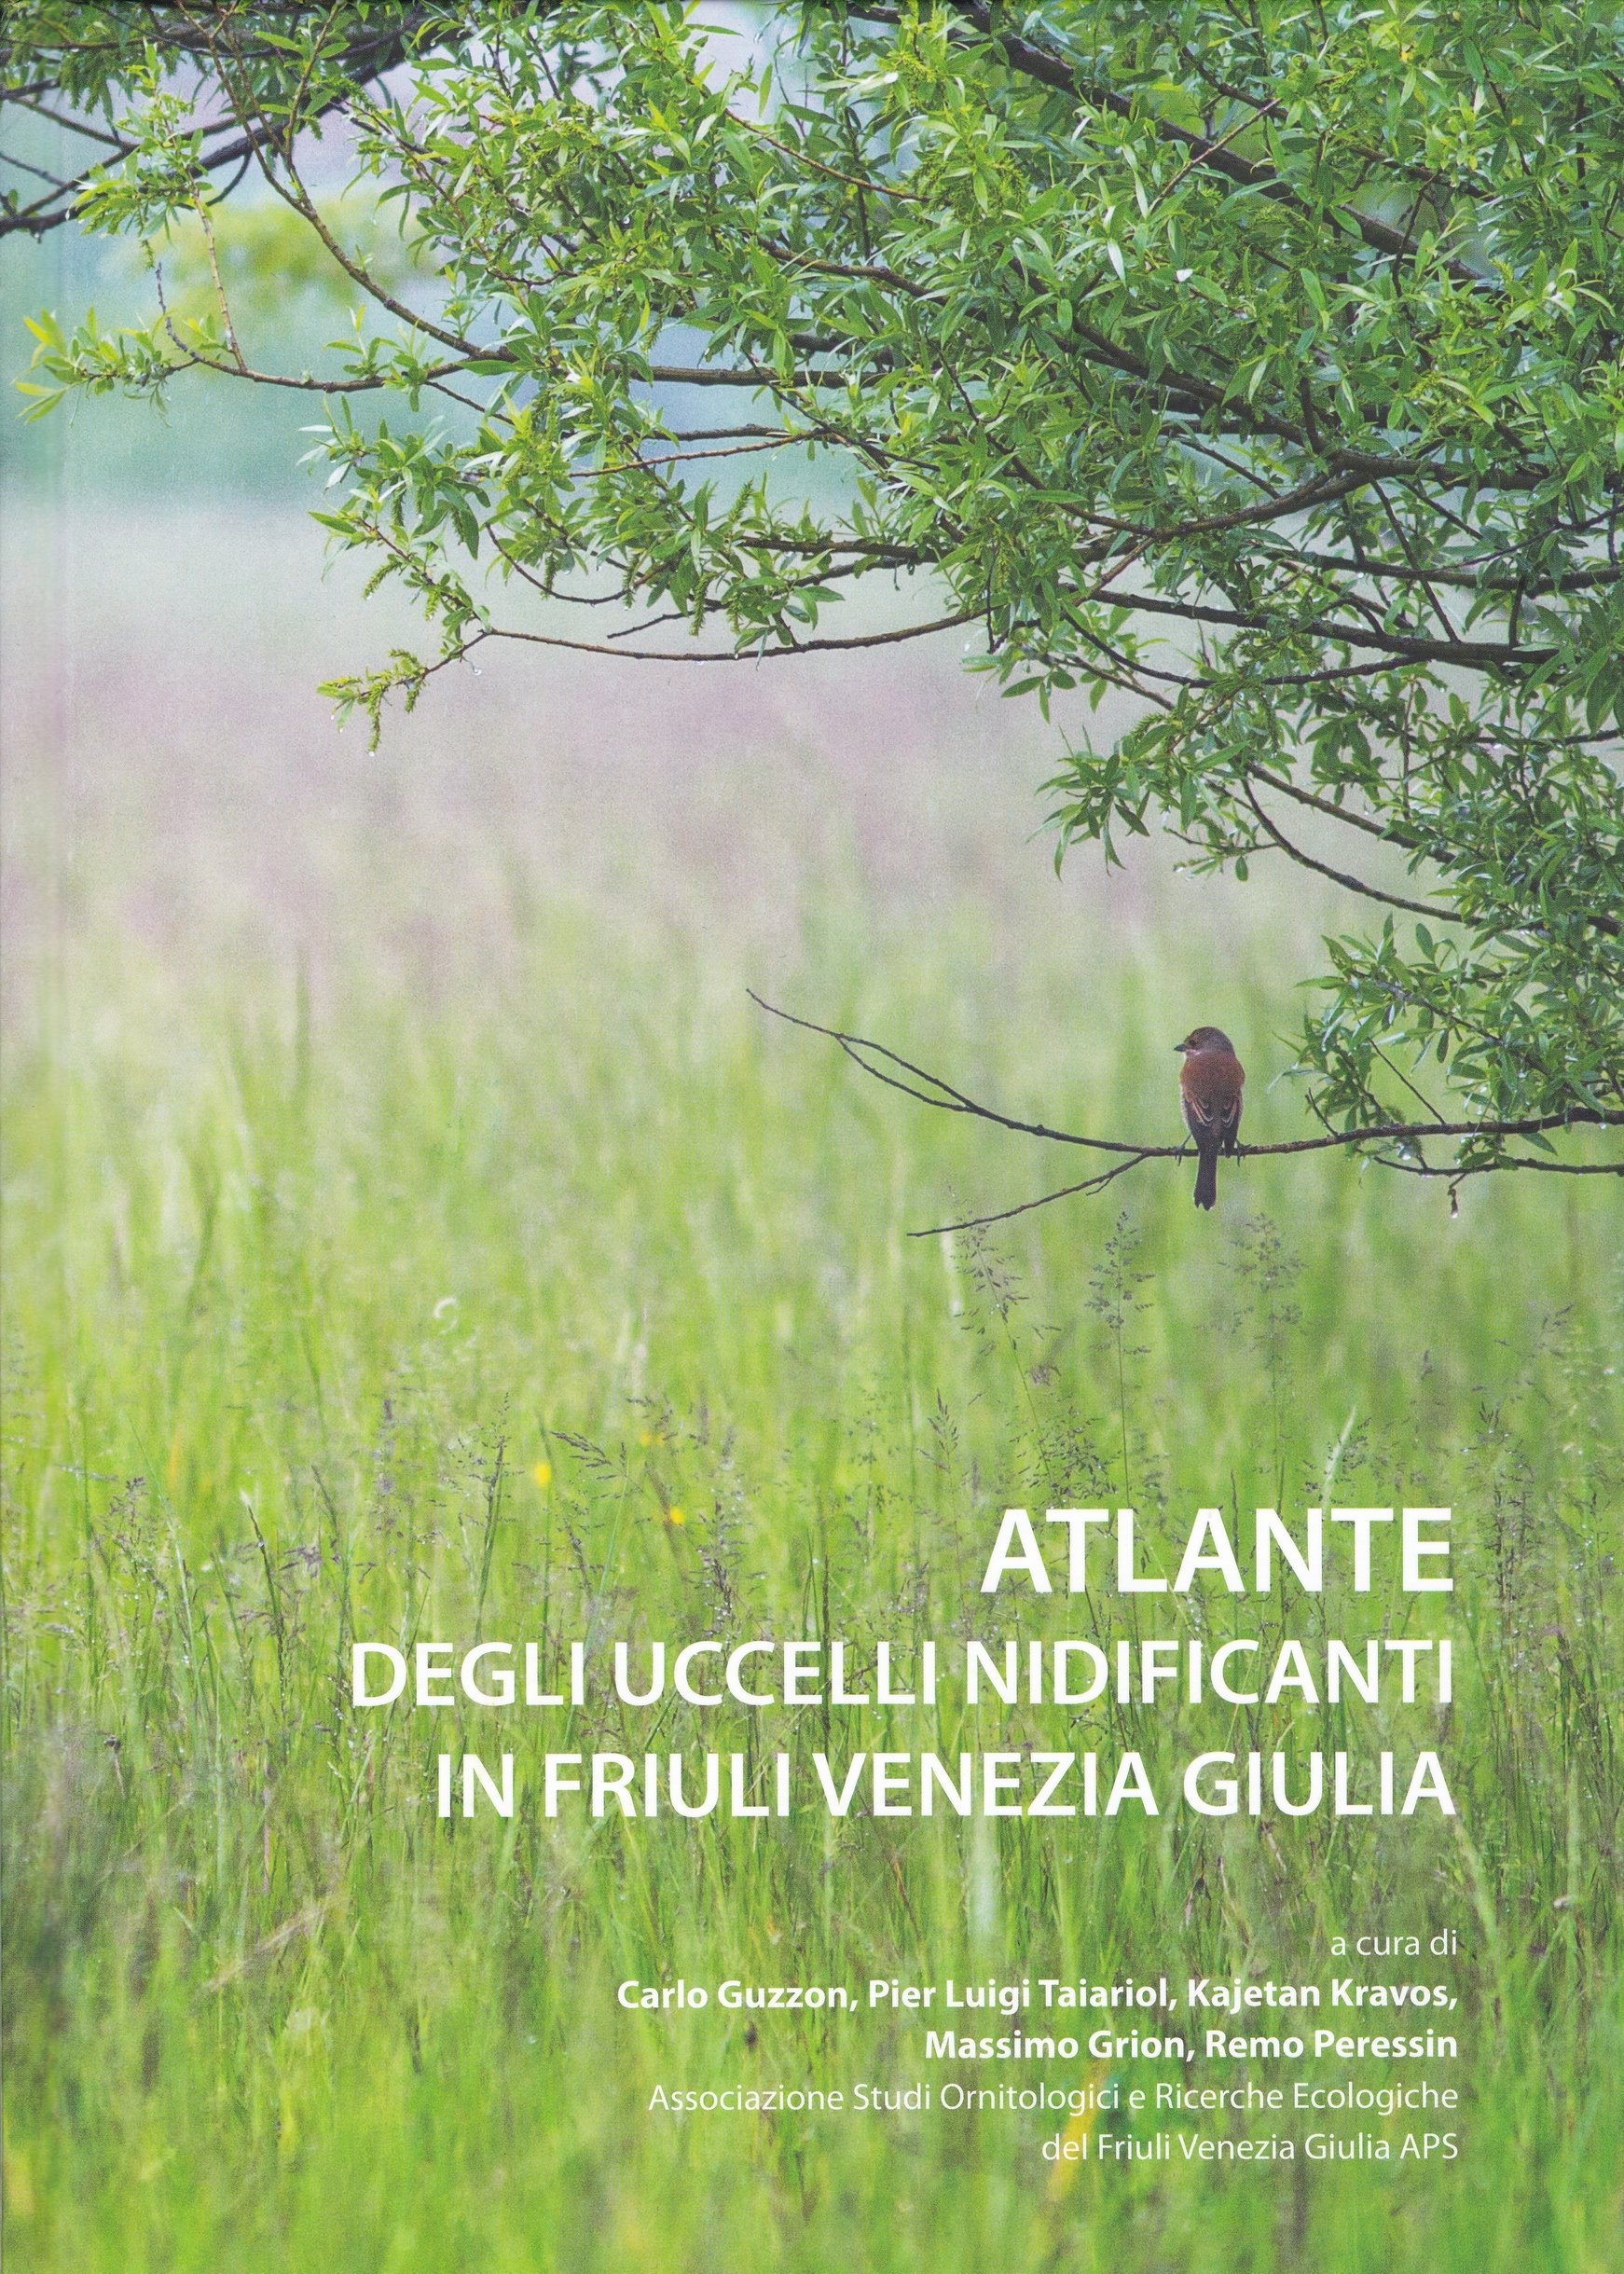 Atlante degli uccelli nidificanti in Friuli Venezia Giulia (Rippl-Rónai Múzeum CC BY-NC-ND)